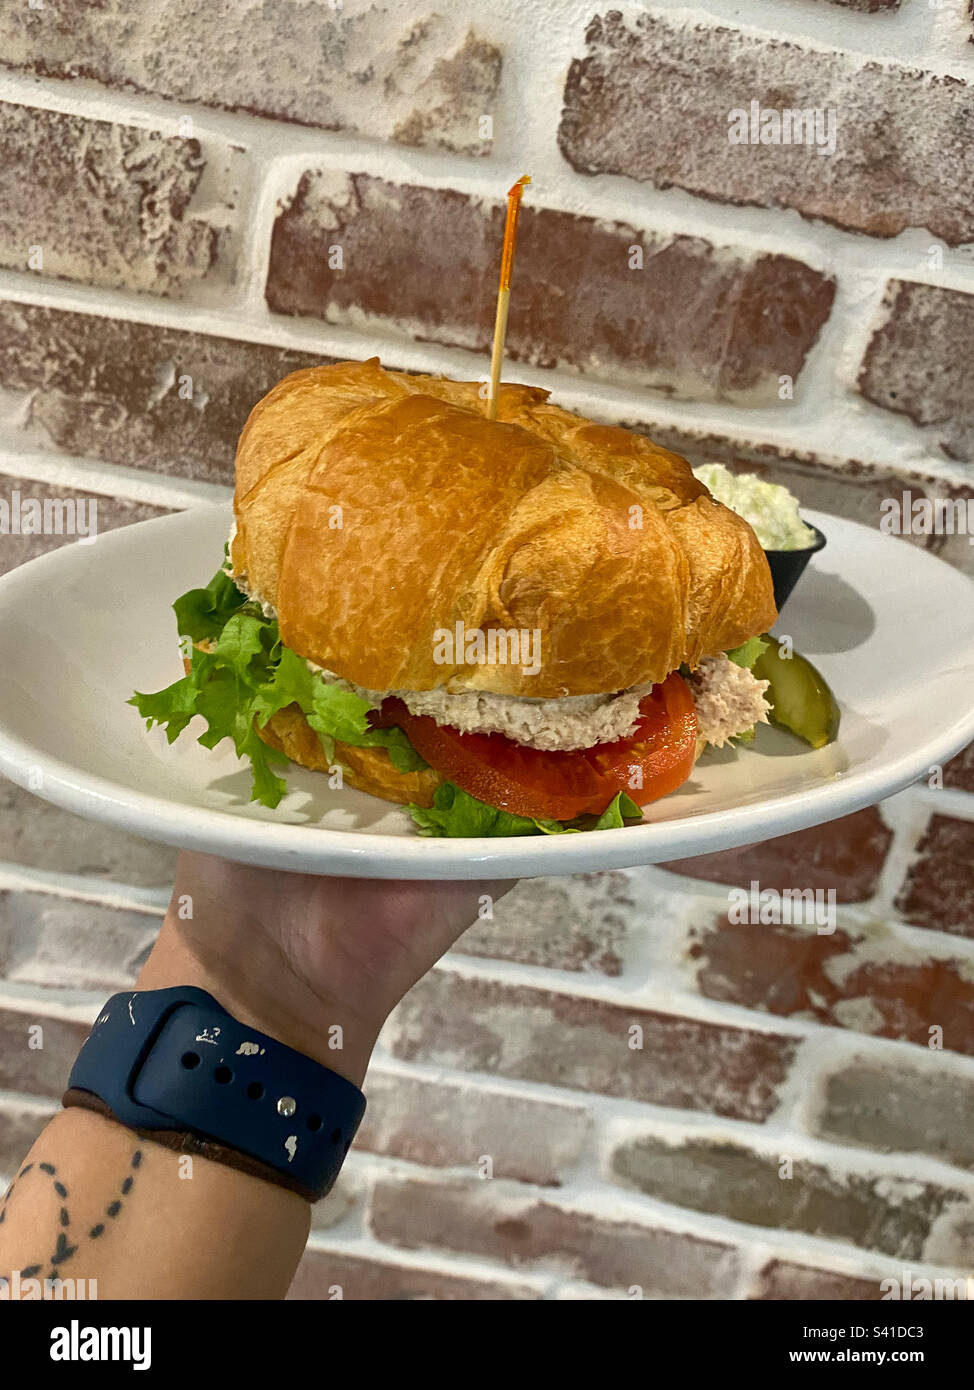 Thunfischsalat-Sandwich auf einem Croissant mit Salat und Tomaten. Serviert auf einem weißen Teller. Backsteinwand im Hintergrund. Angewinkeltes Foto. Stockfoto